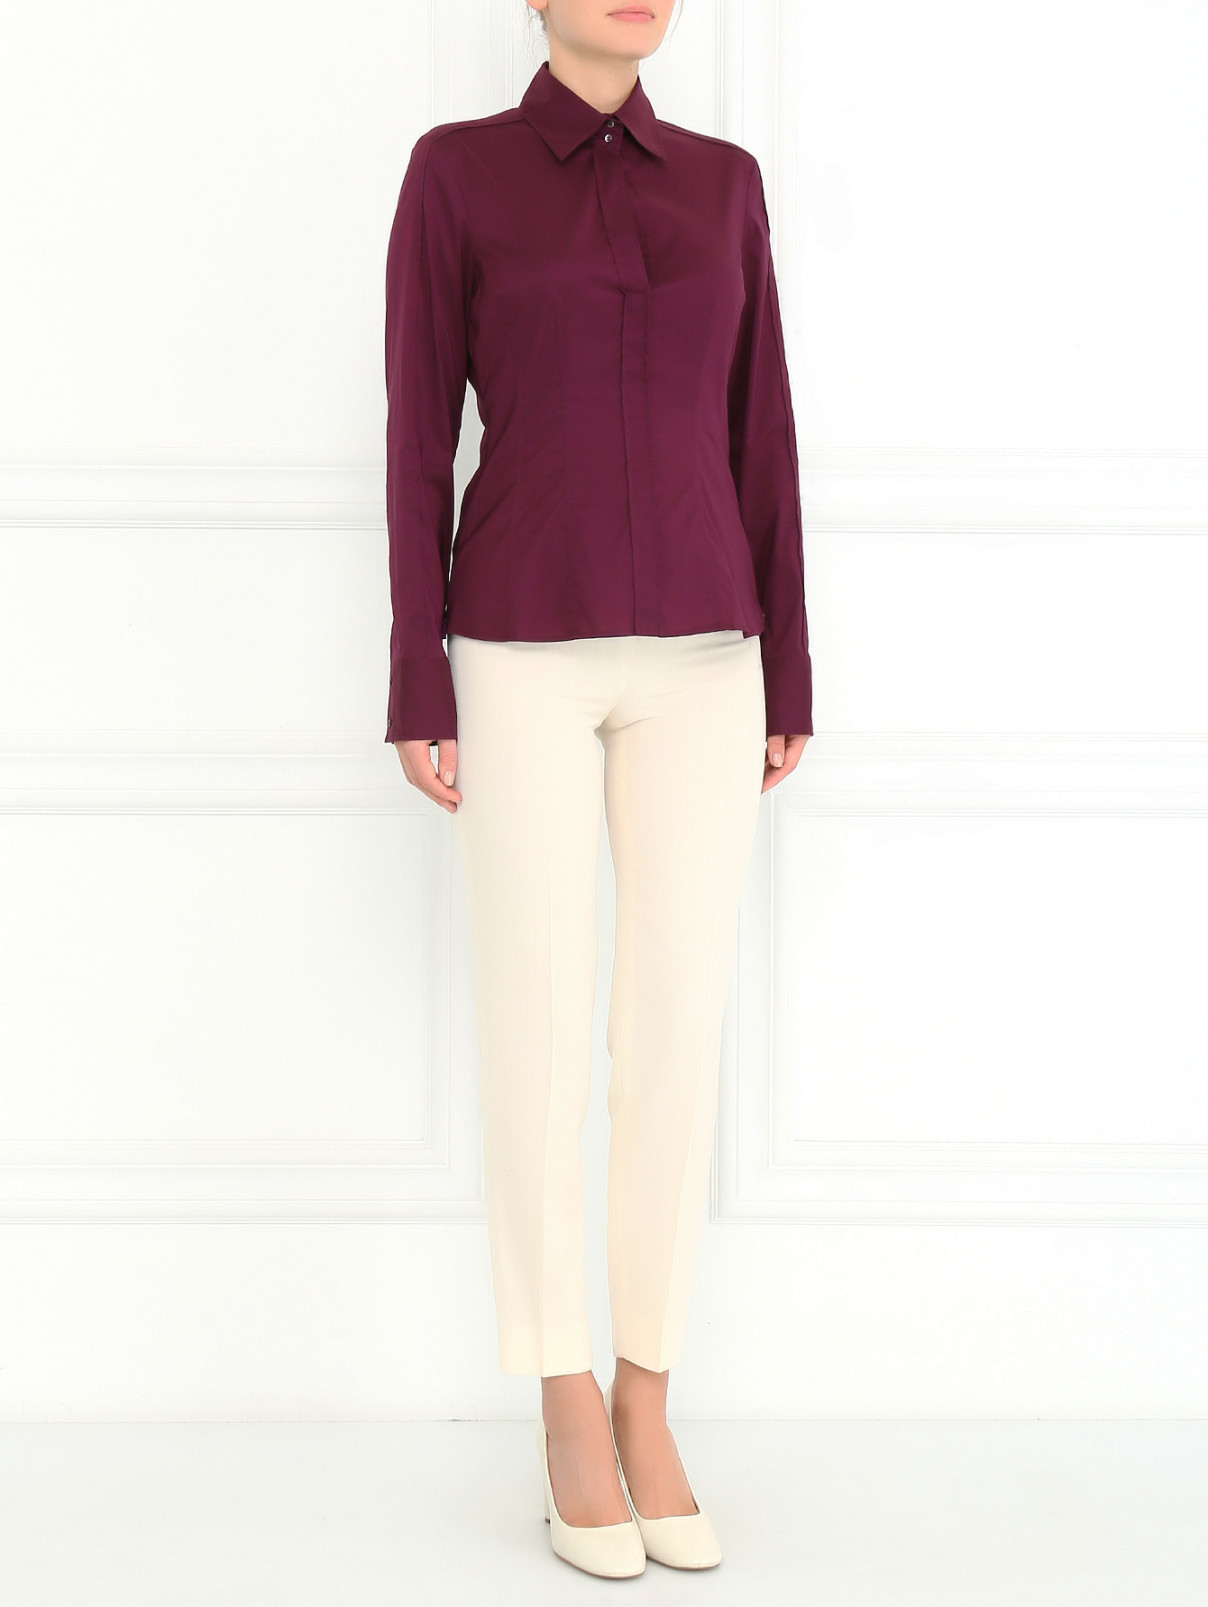 Укороченные брюки из шерсти Moschino Cheap&Chic  –  Модель Общий вид  – Цвет:  Белый